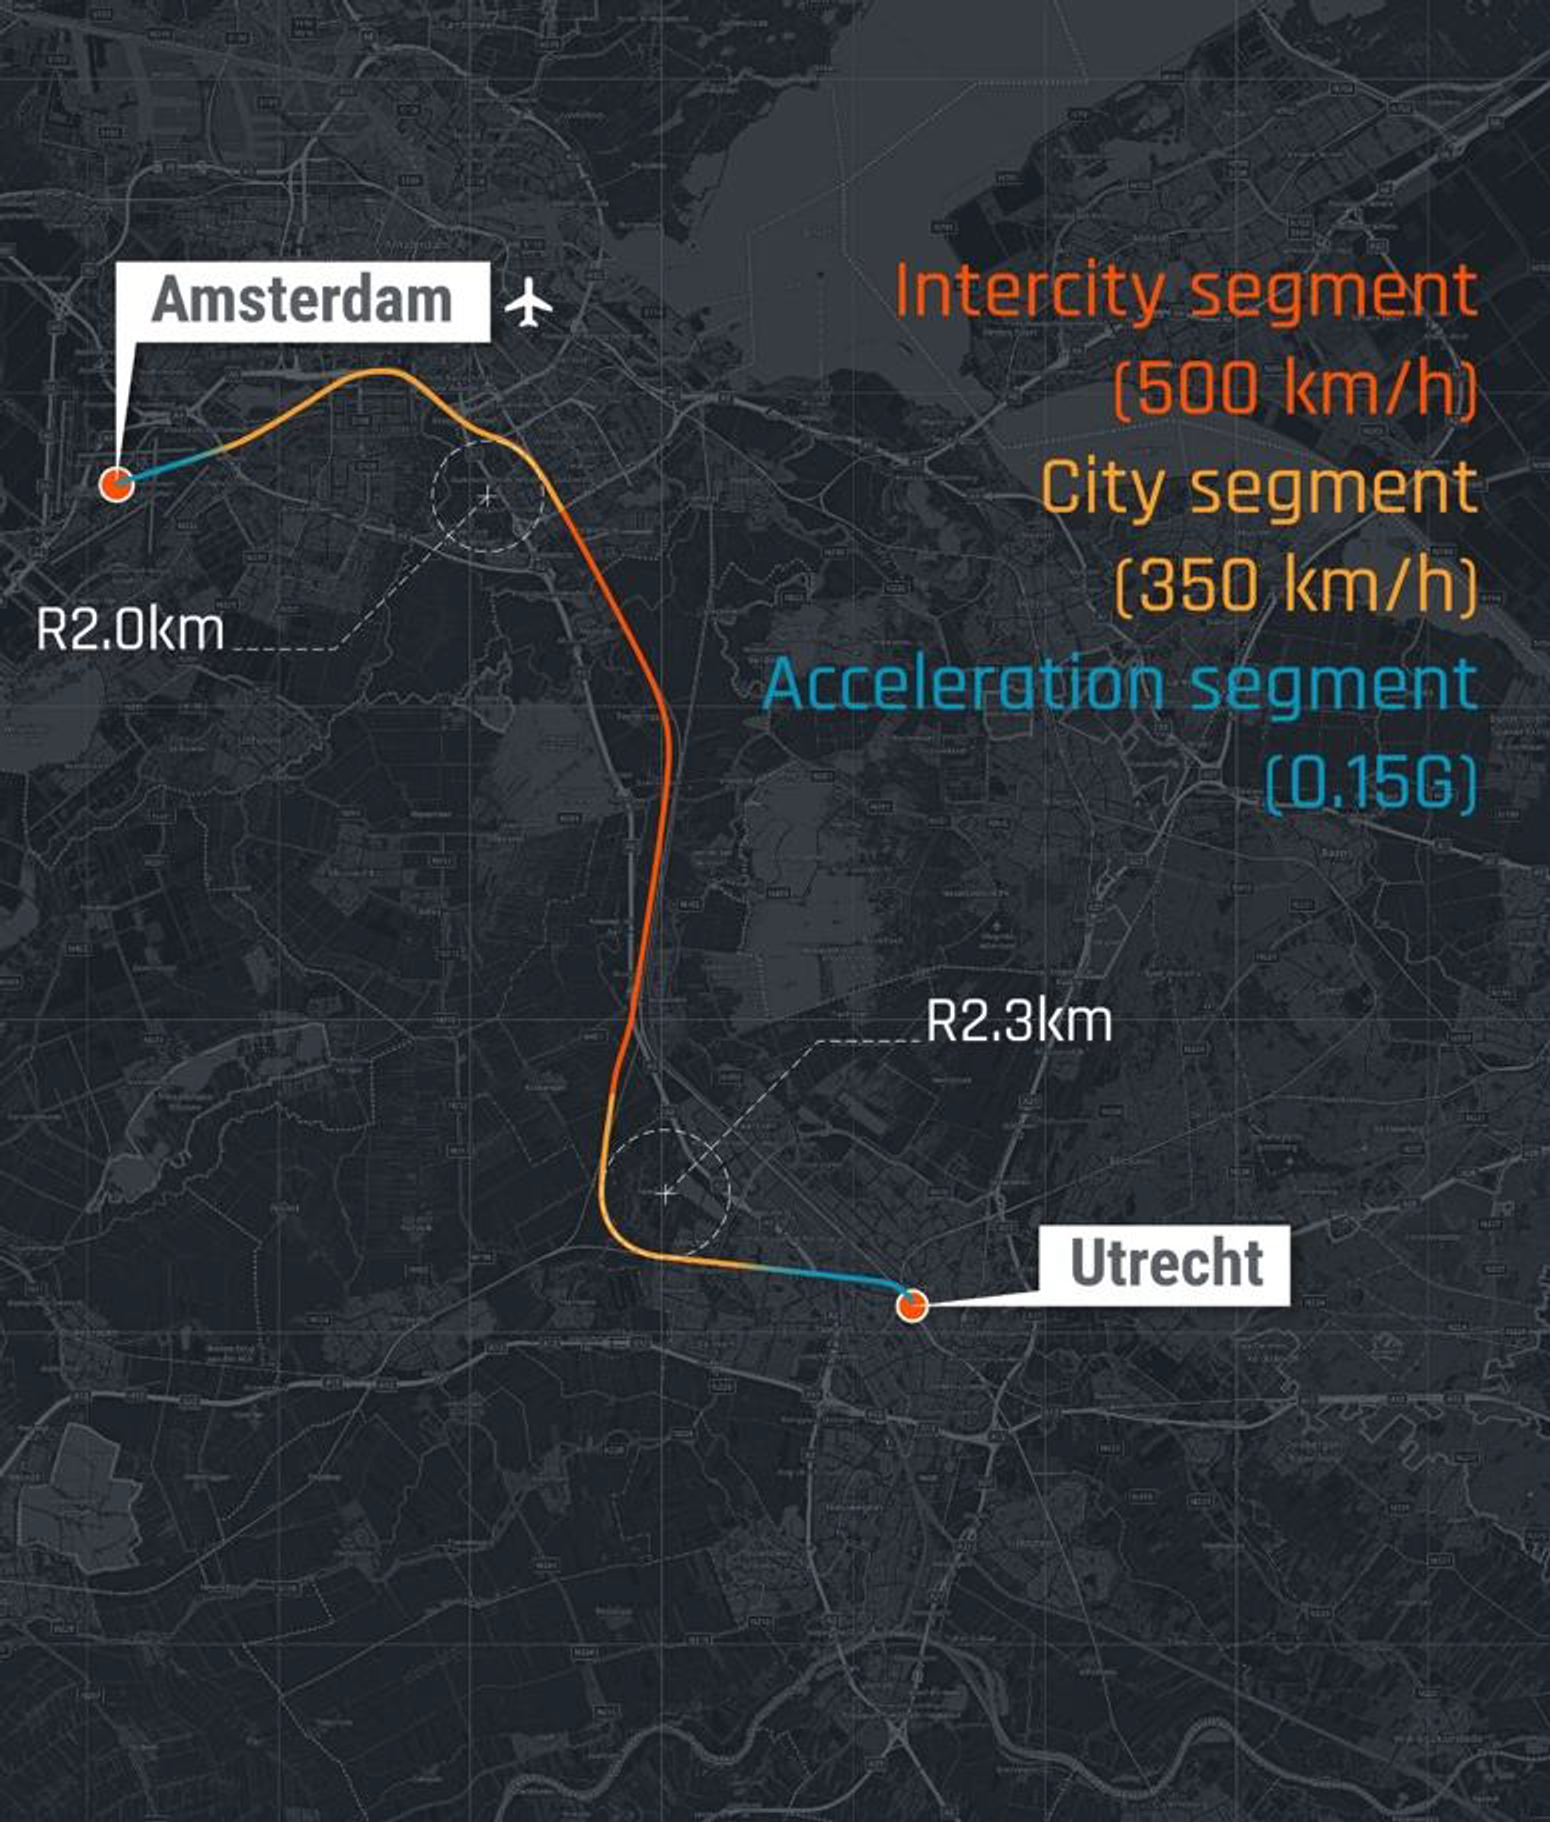 Example of the corridor segments between Amsterdam and Utrecht